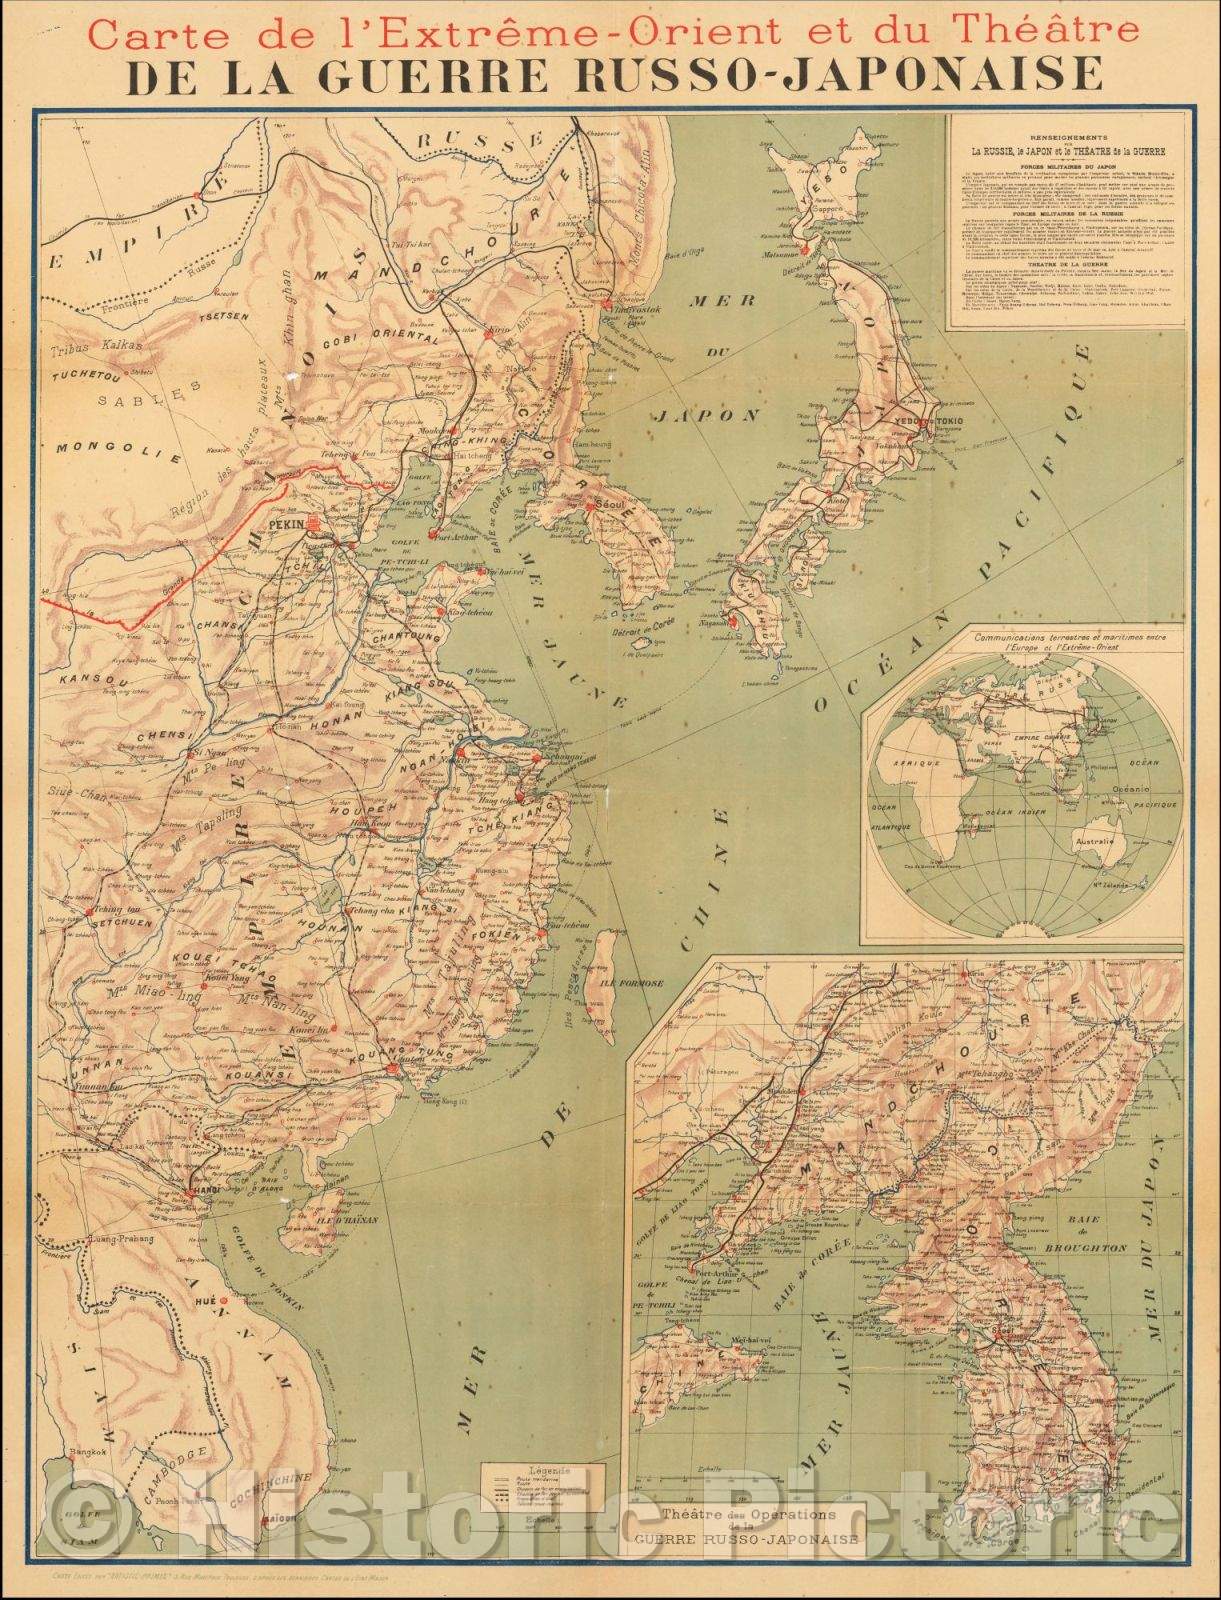 Historic Map - Carte de l'Extreme-Orient et du Theatre De La Guerre Russo-Japonaise/Map of the Theater of War during the Russo-Japanese War, 1904 - Vintage Wall Art